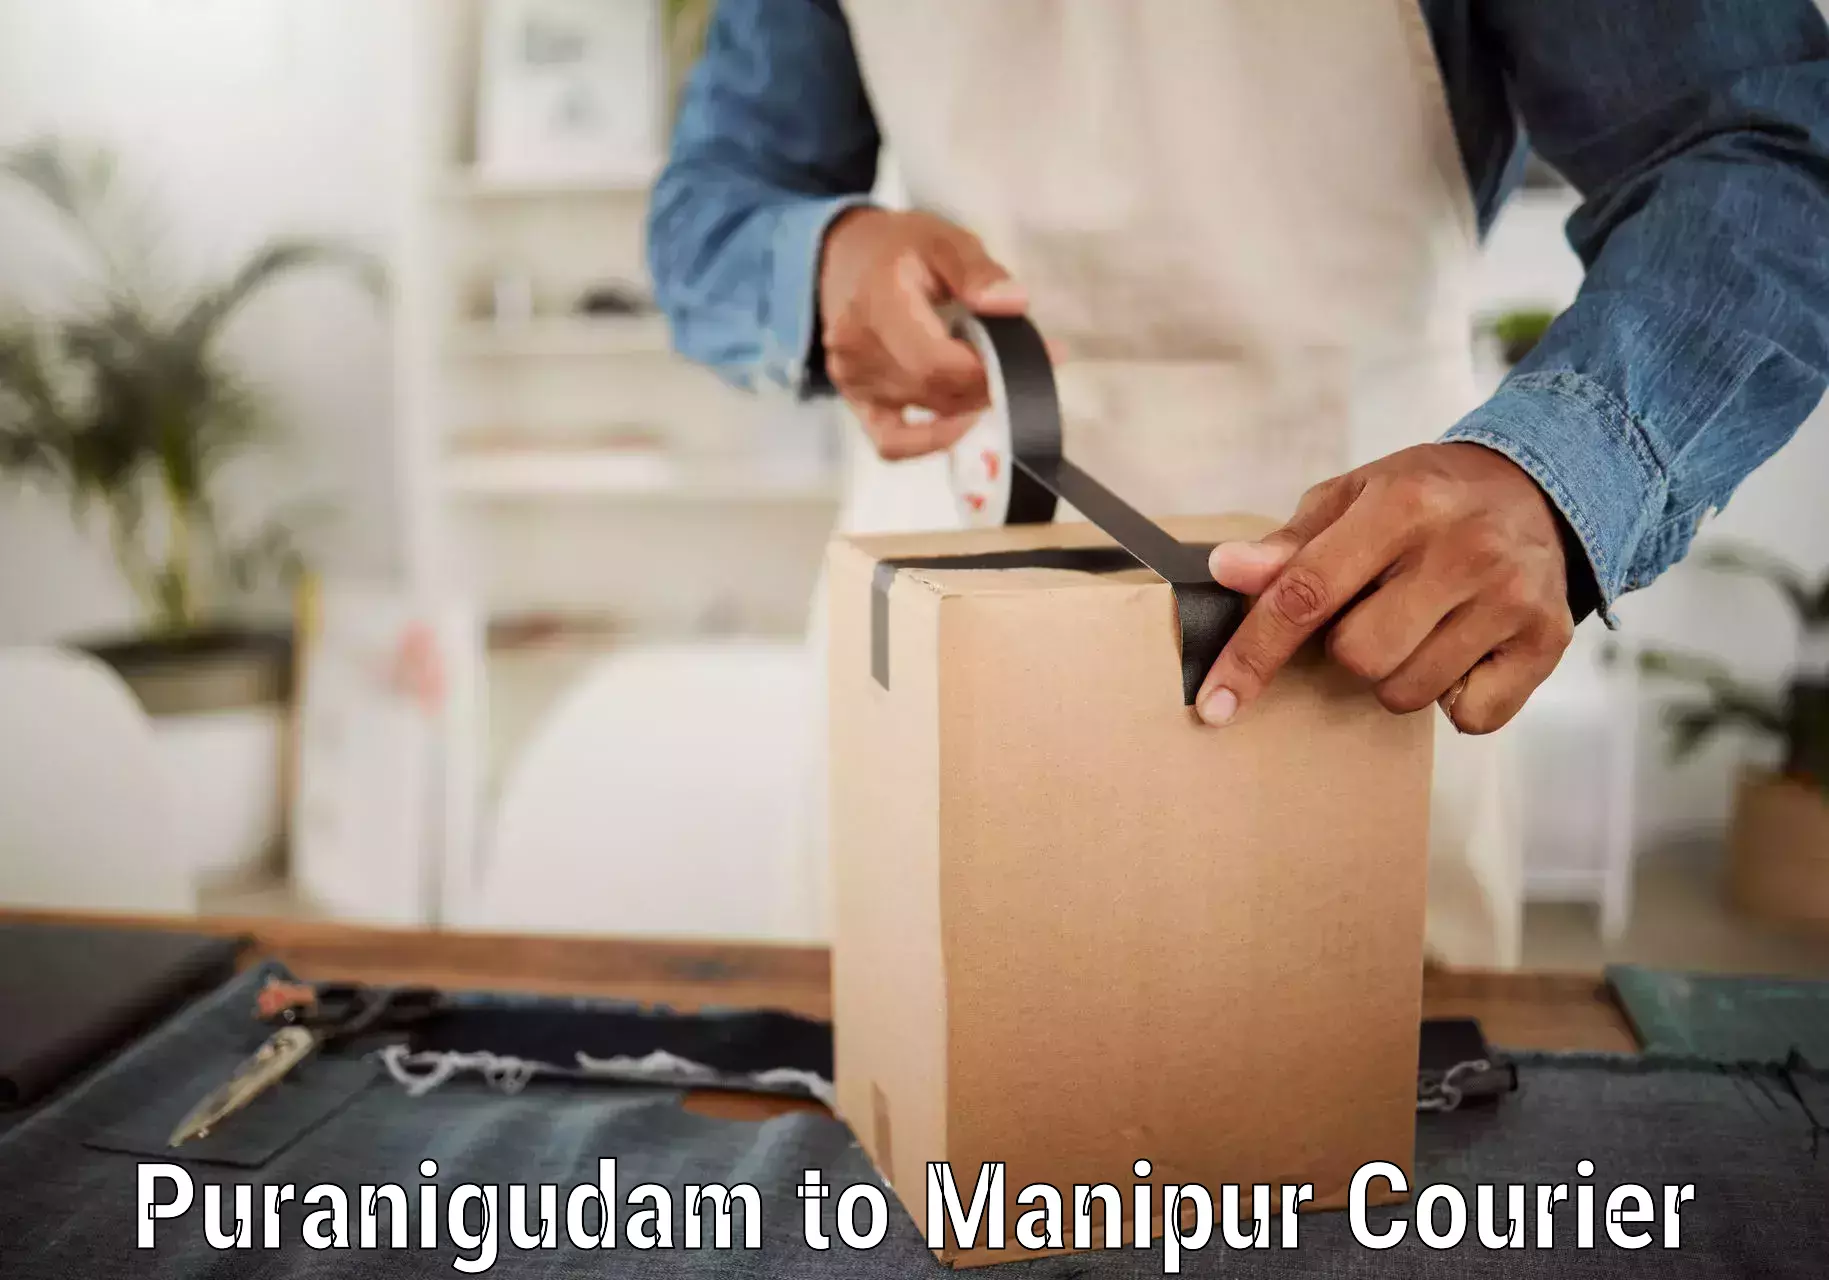 Courier service comparison Puranigudam to Moirang